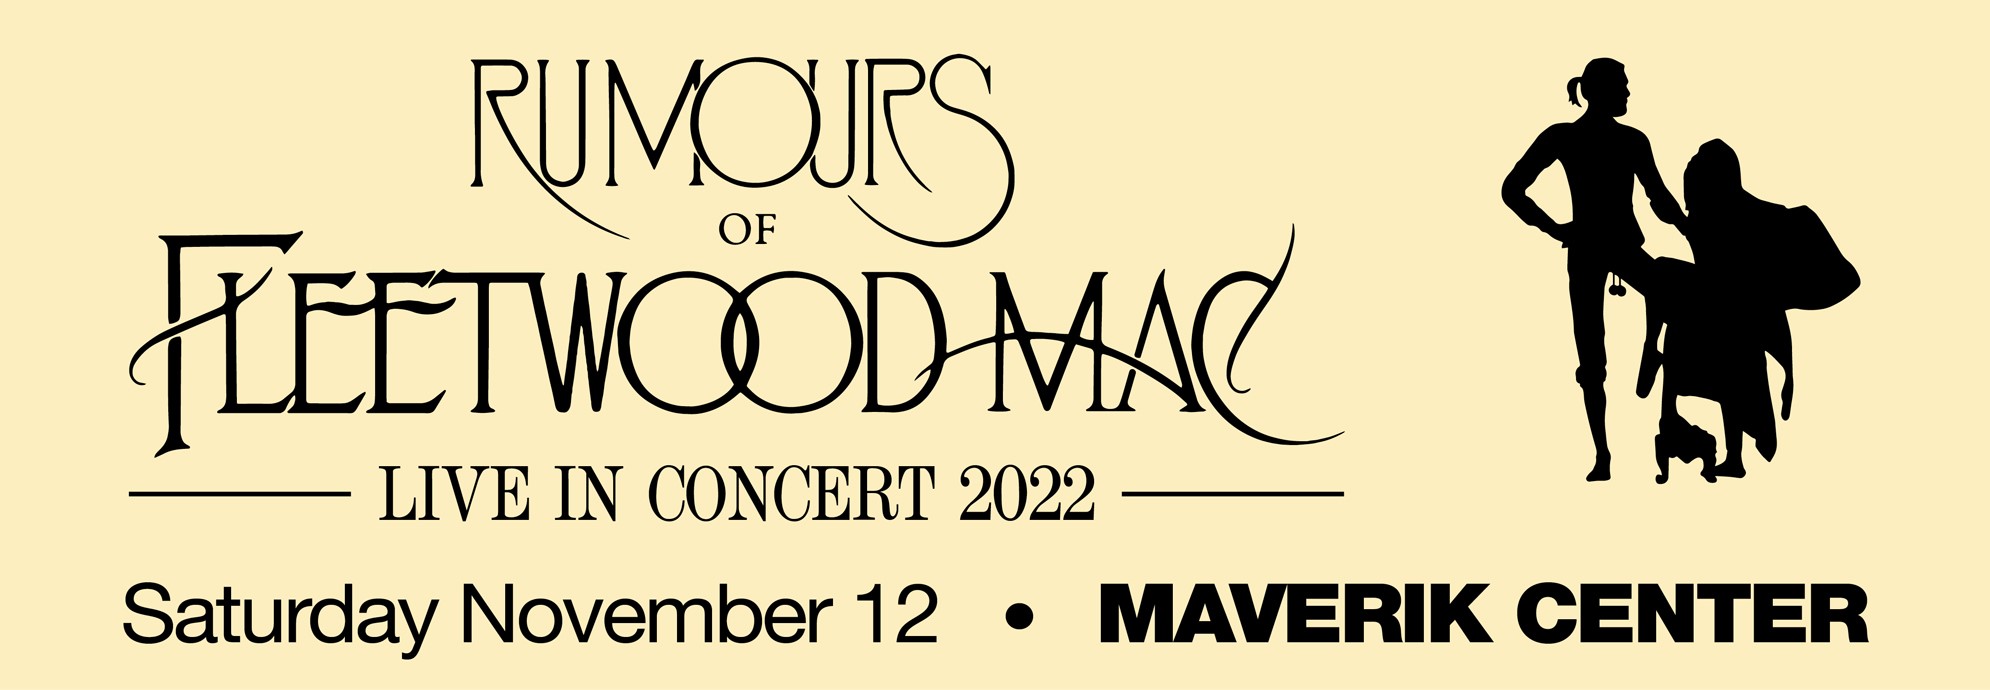 RUMOURS OF FLEETWOOD MAC - Live in Concert 2022